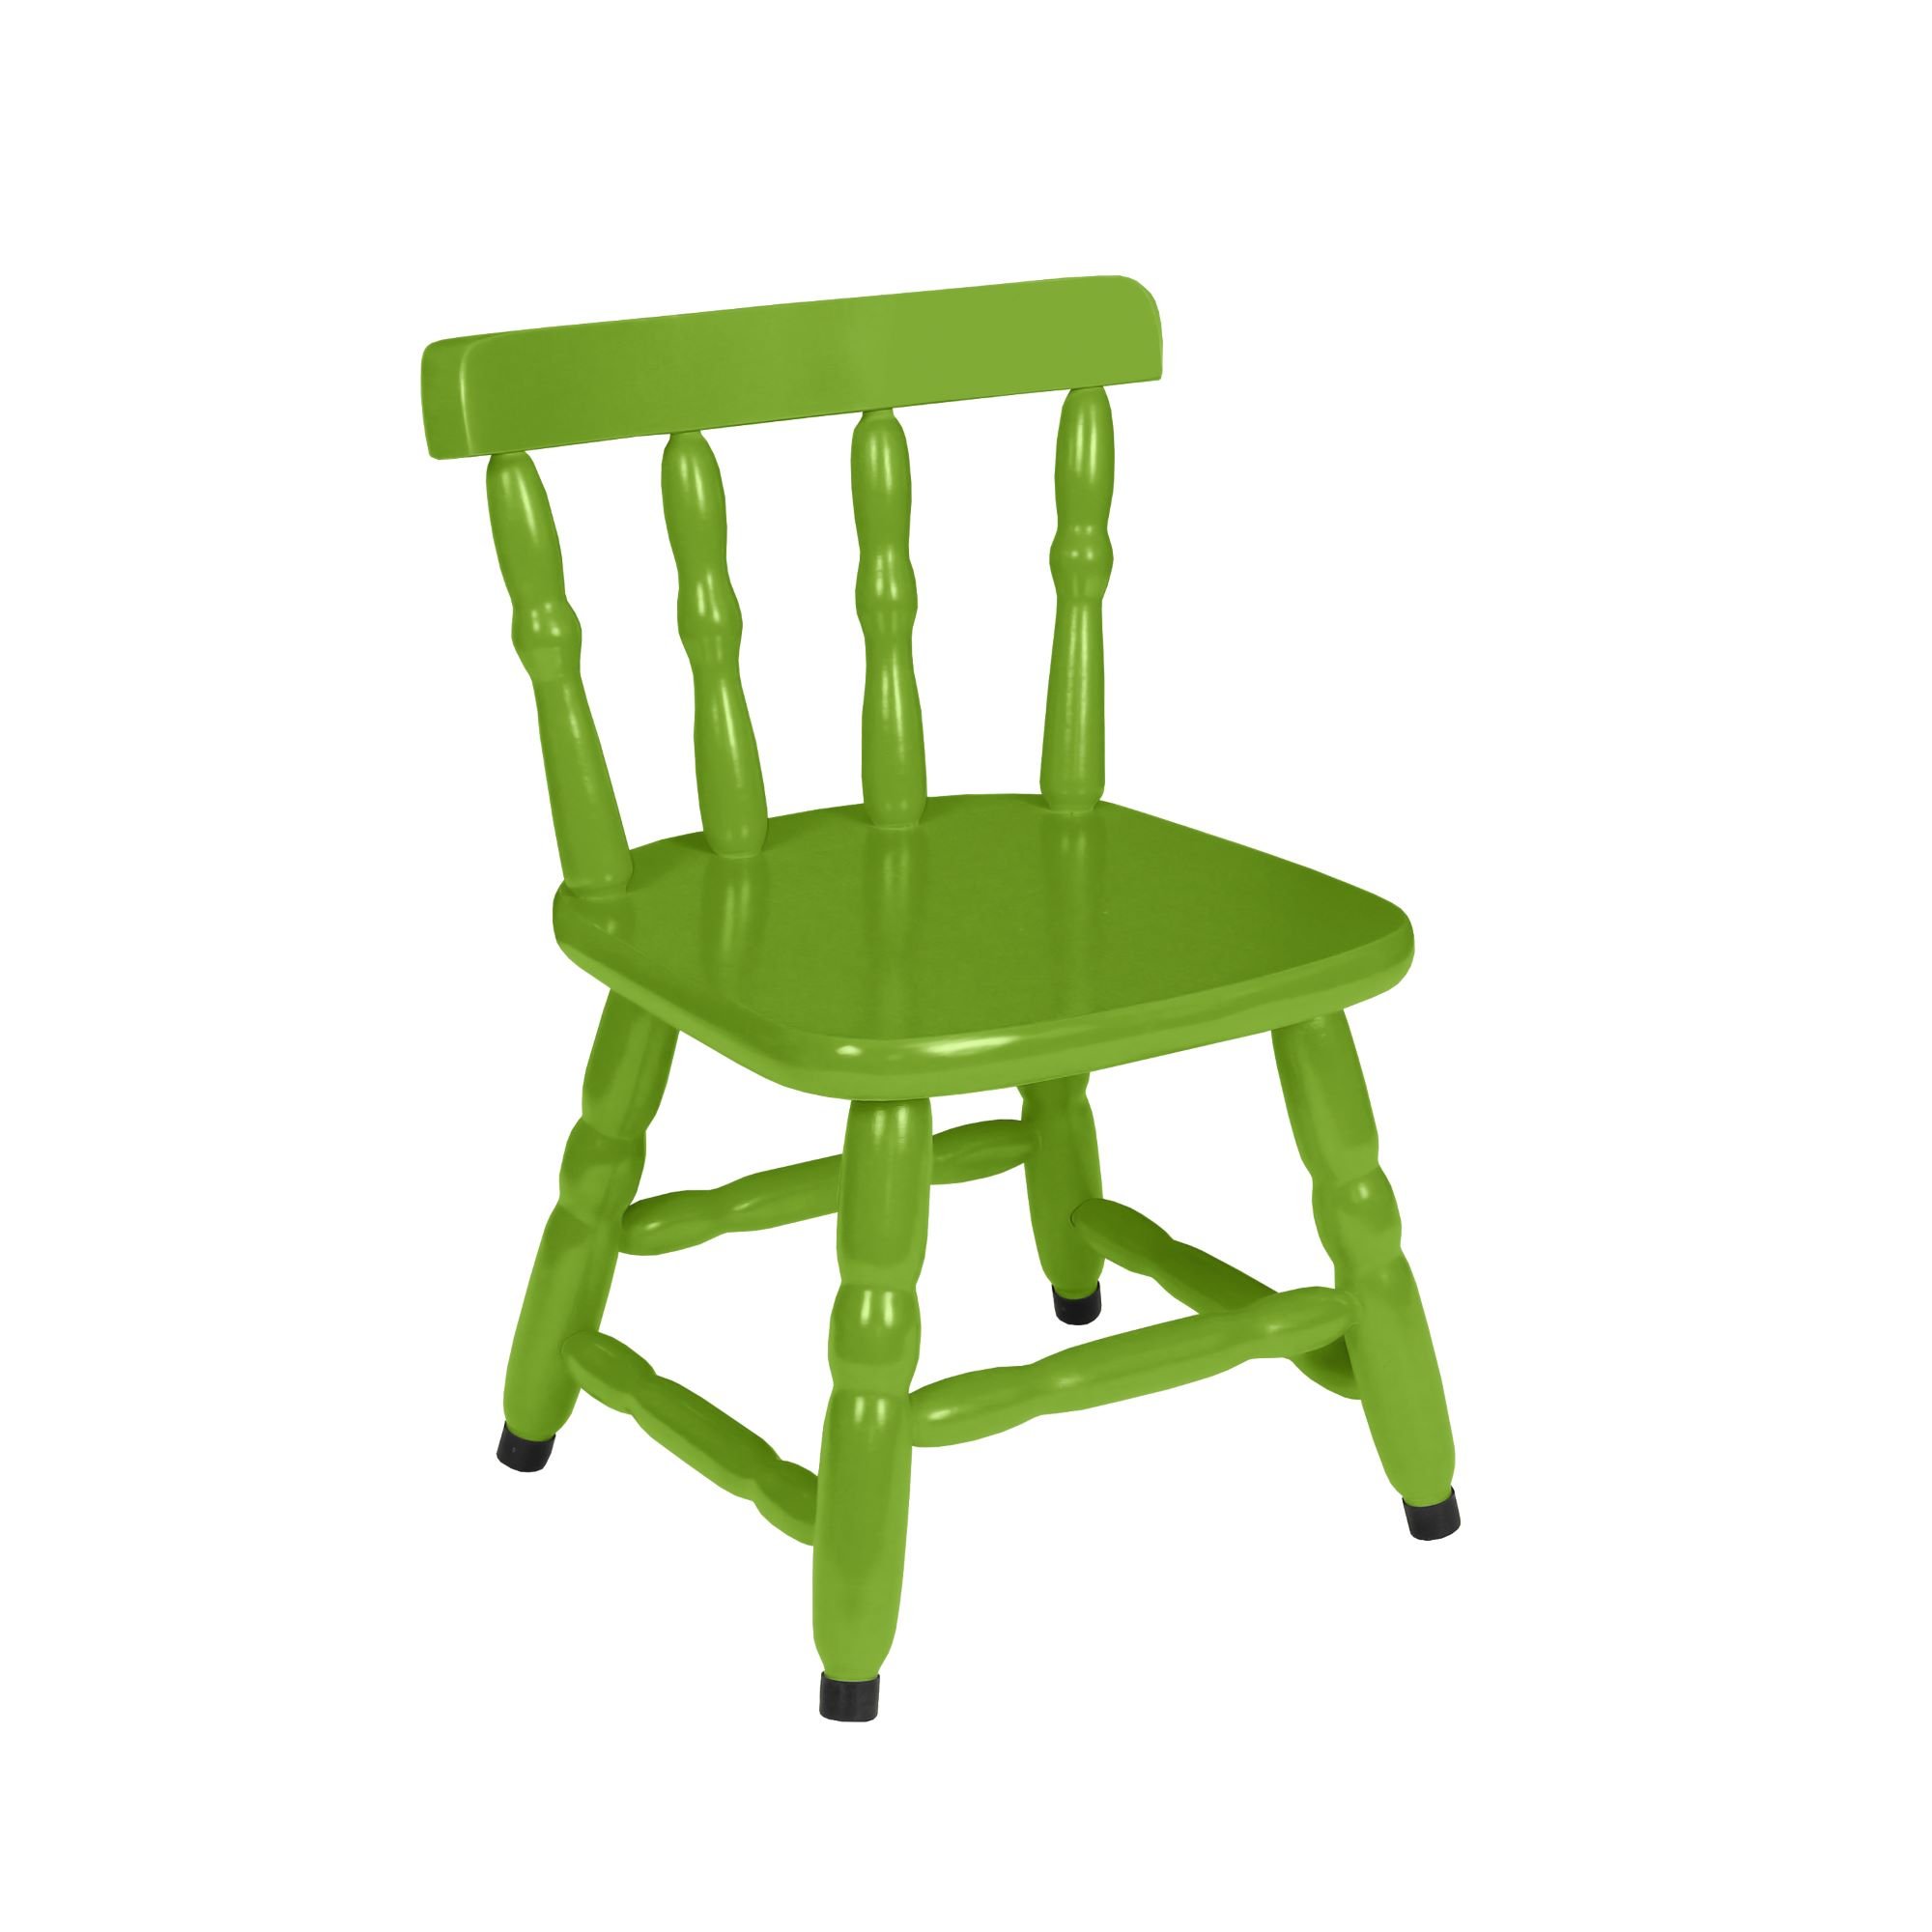 1 Cadeira Infantil Scholl Coloridas - Verde